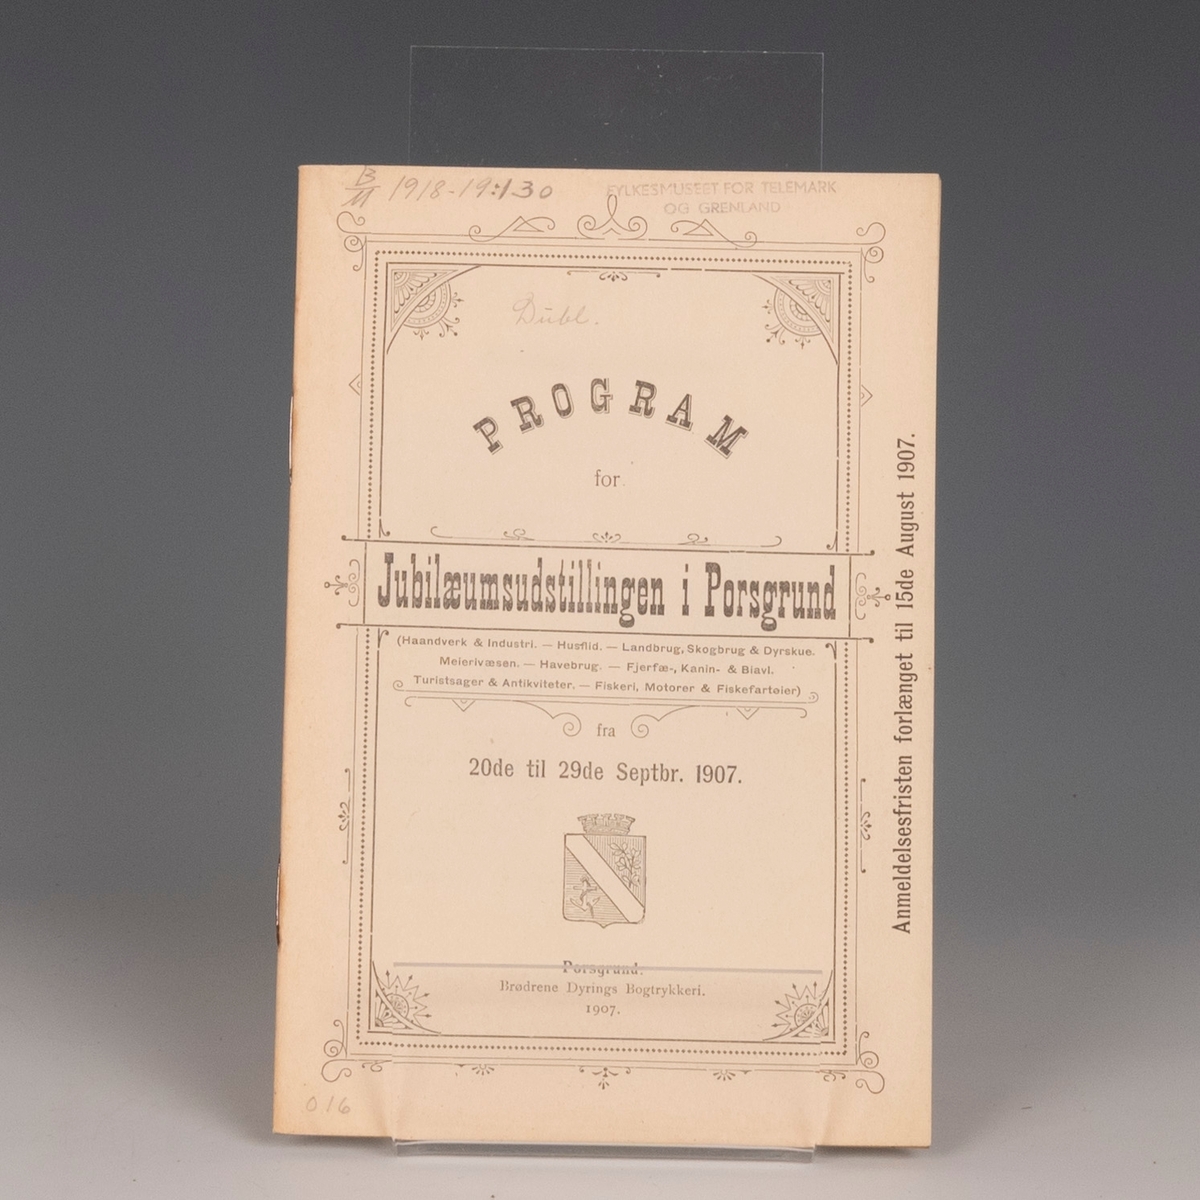 Prot: Program for Jubileumsudstillingen i Porsgrund 1907. Porsgruns 1907, 29 s.